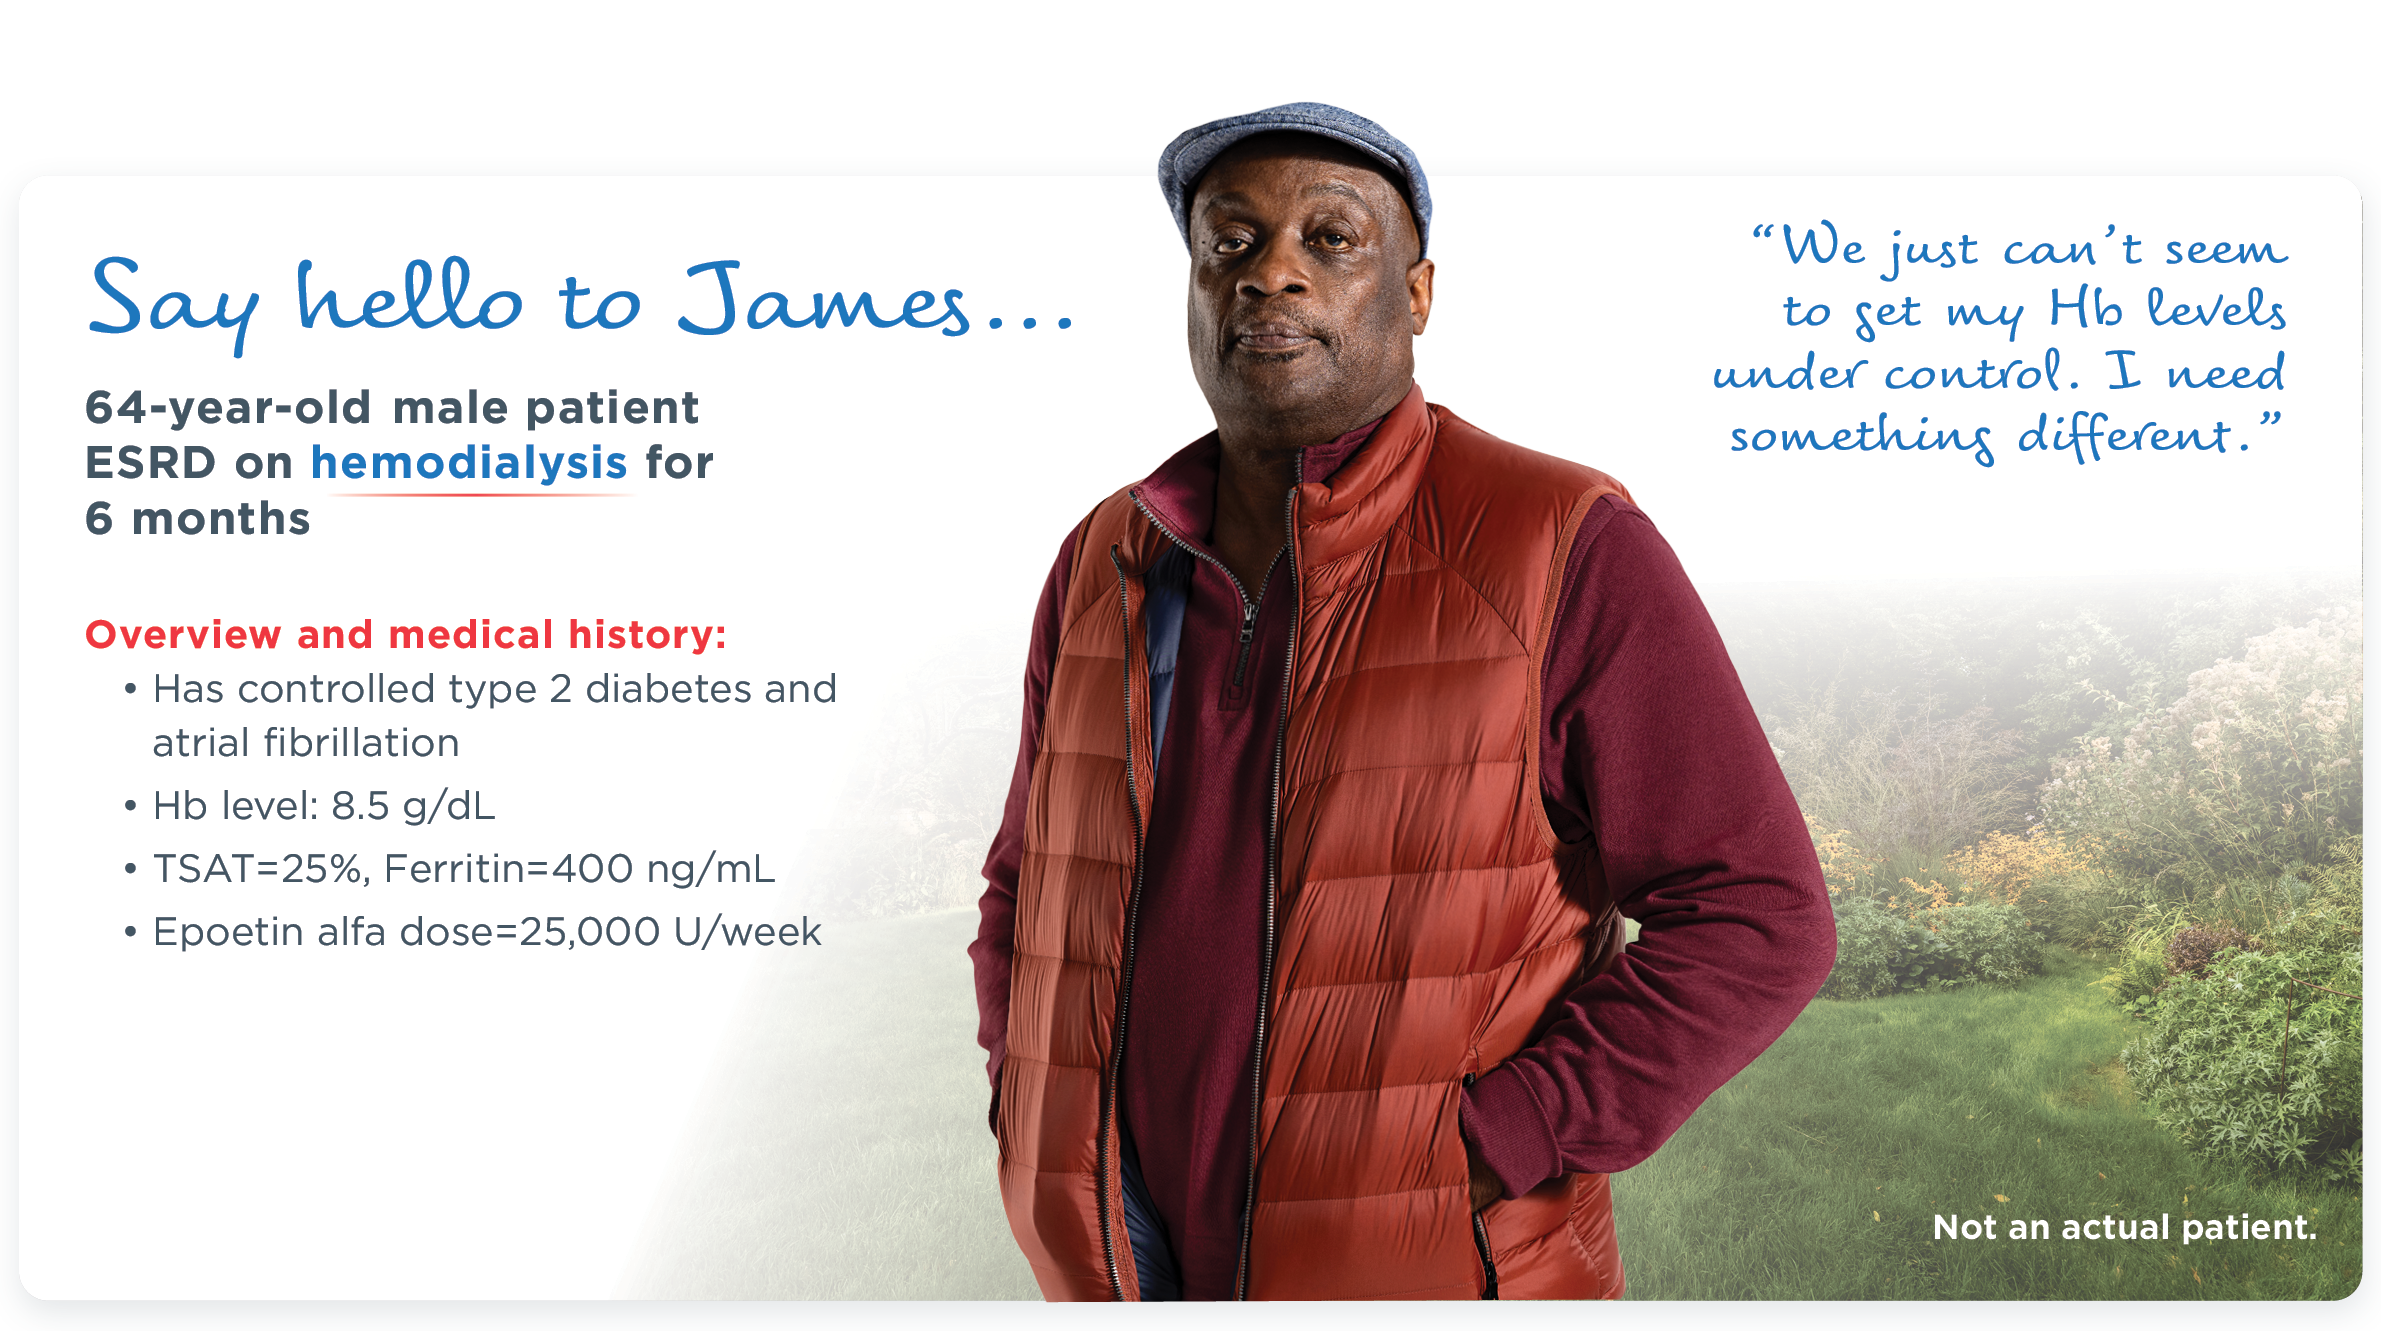 James patient profile infographic